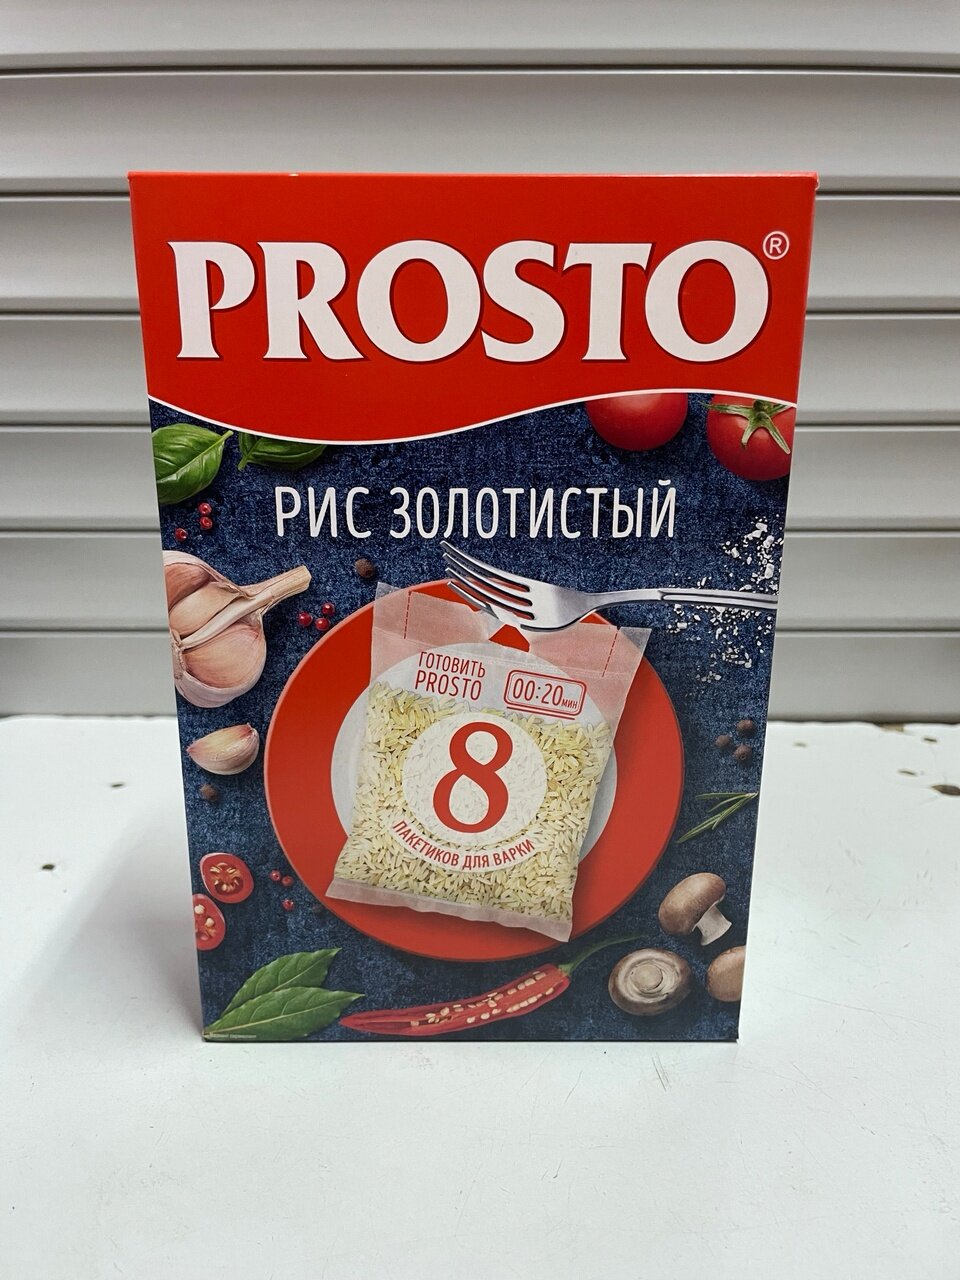 Prosto-Рис золотистый в пакетиках для варки,2х500 грамм.